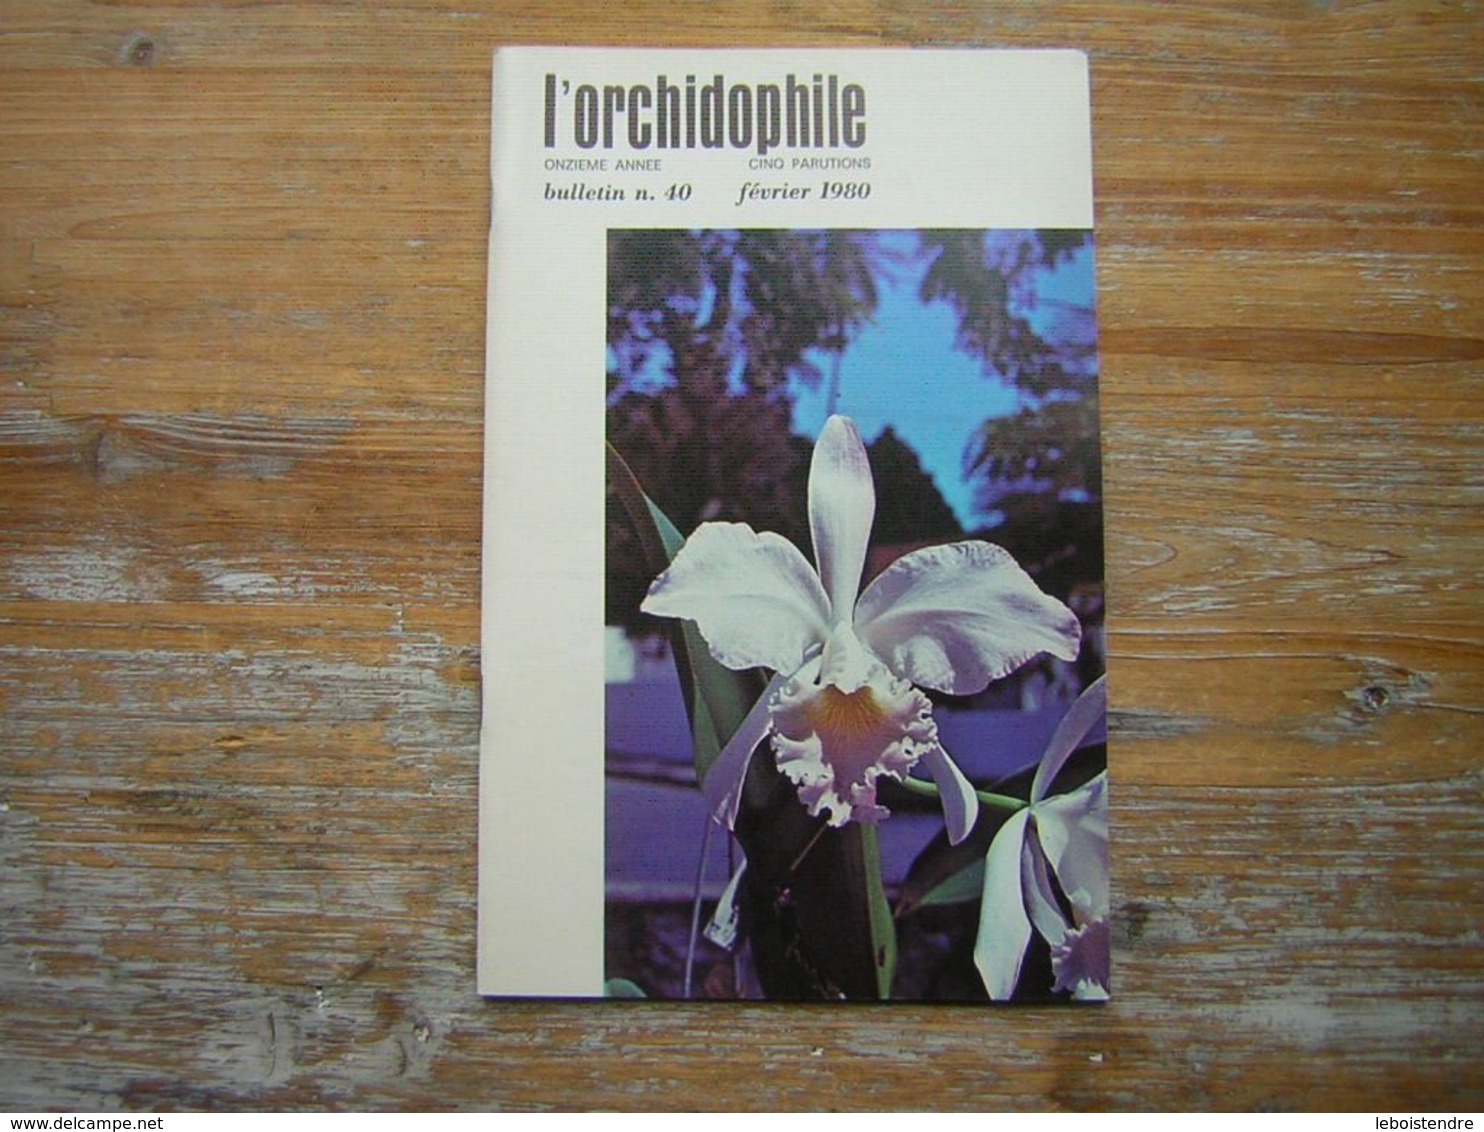 L'ORCHIDOPHILE Onzieme Année BULLETIN N° 40 FEVRIER 1980 - Garden